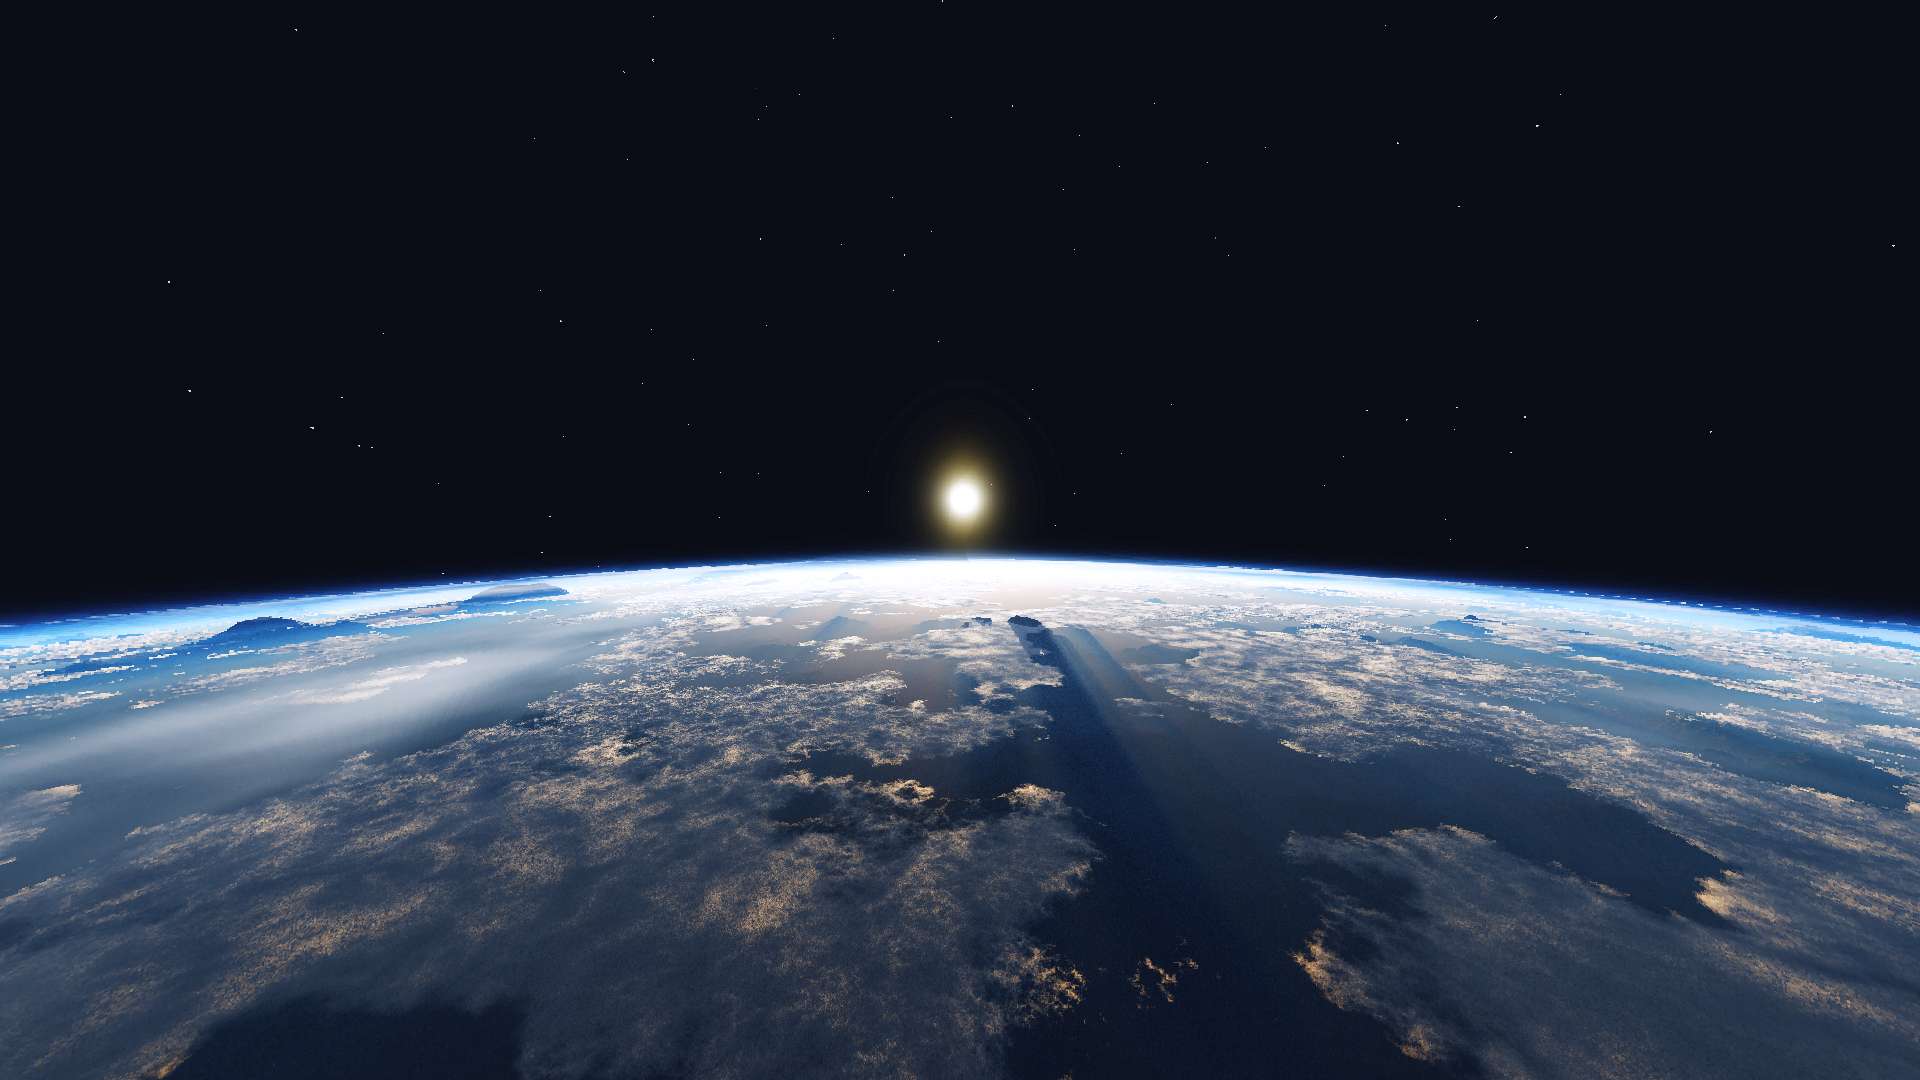 Earth Sky 16 by Yuruze on PvPRP